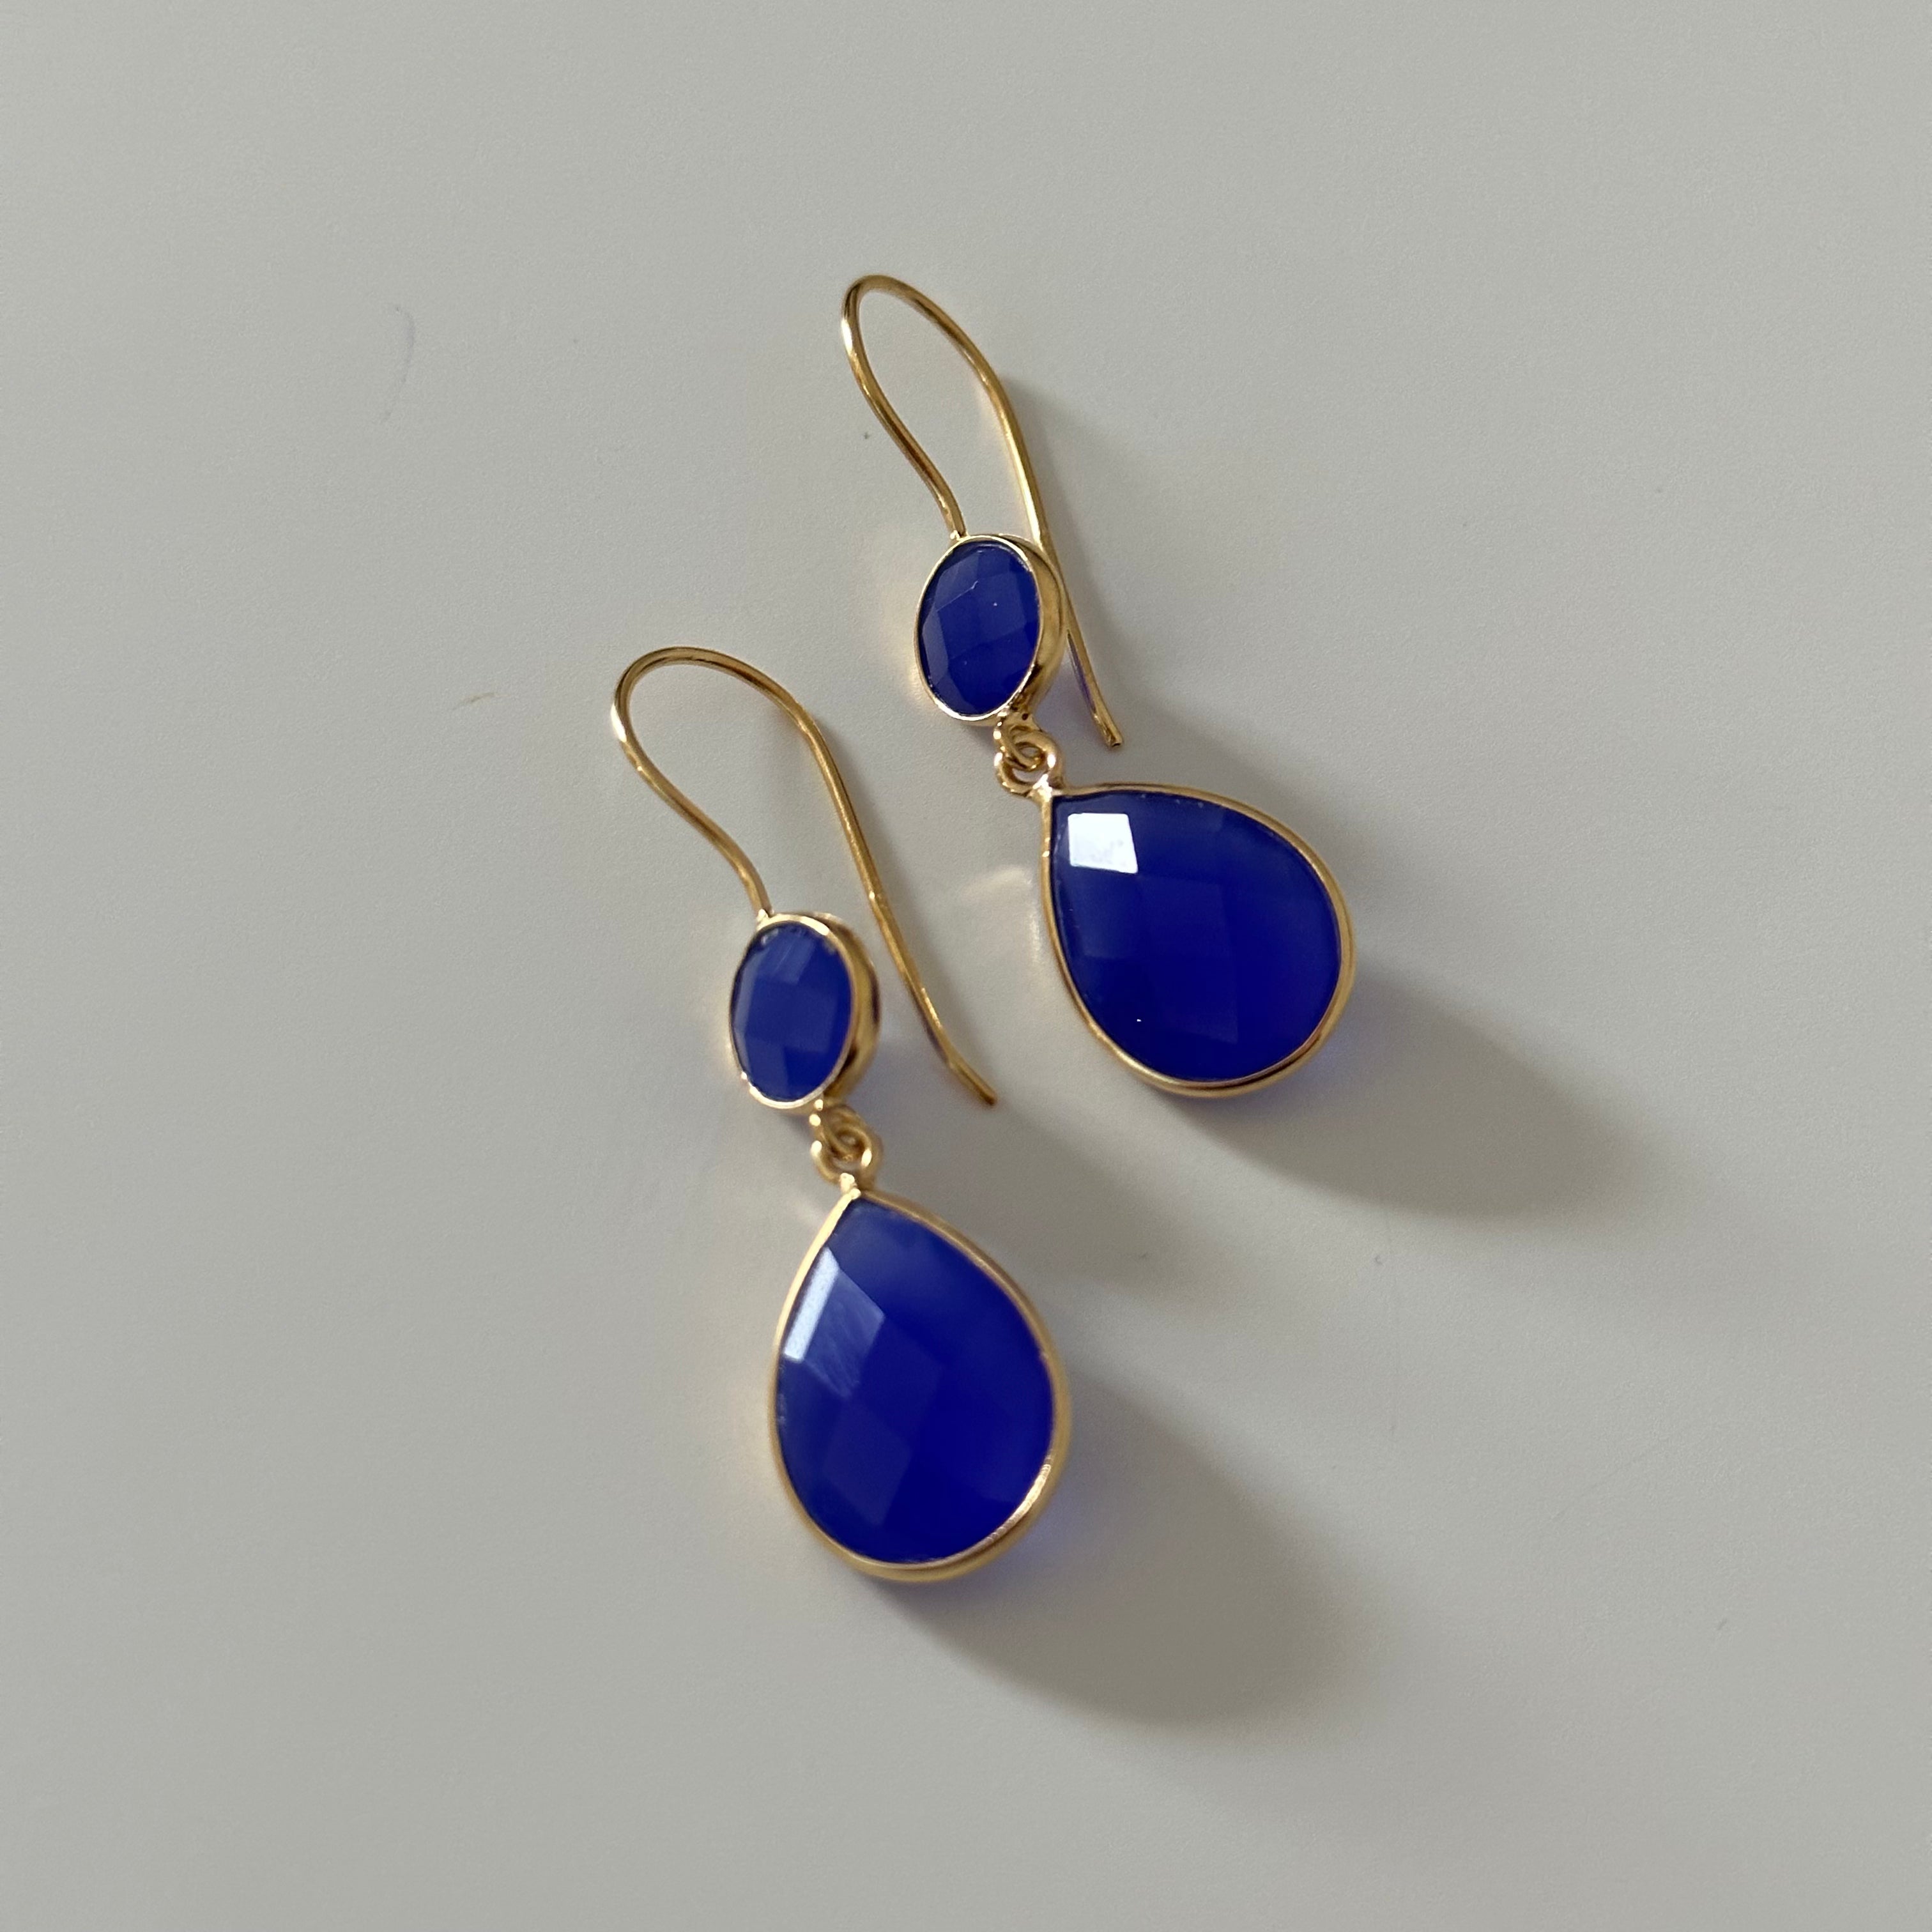 Blue Chalcedony Gemstone Two Stone Earrings in Gold Plated Sterling Silver - Teardrop